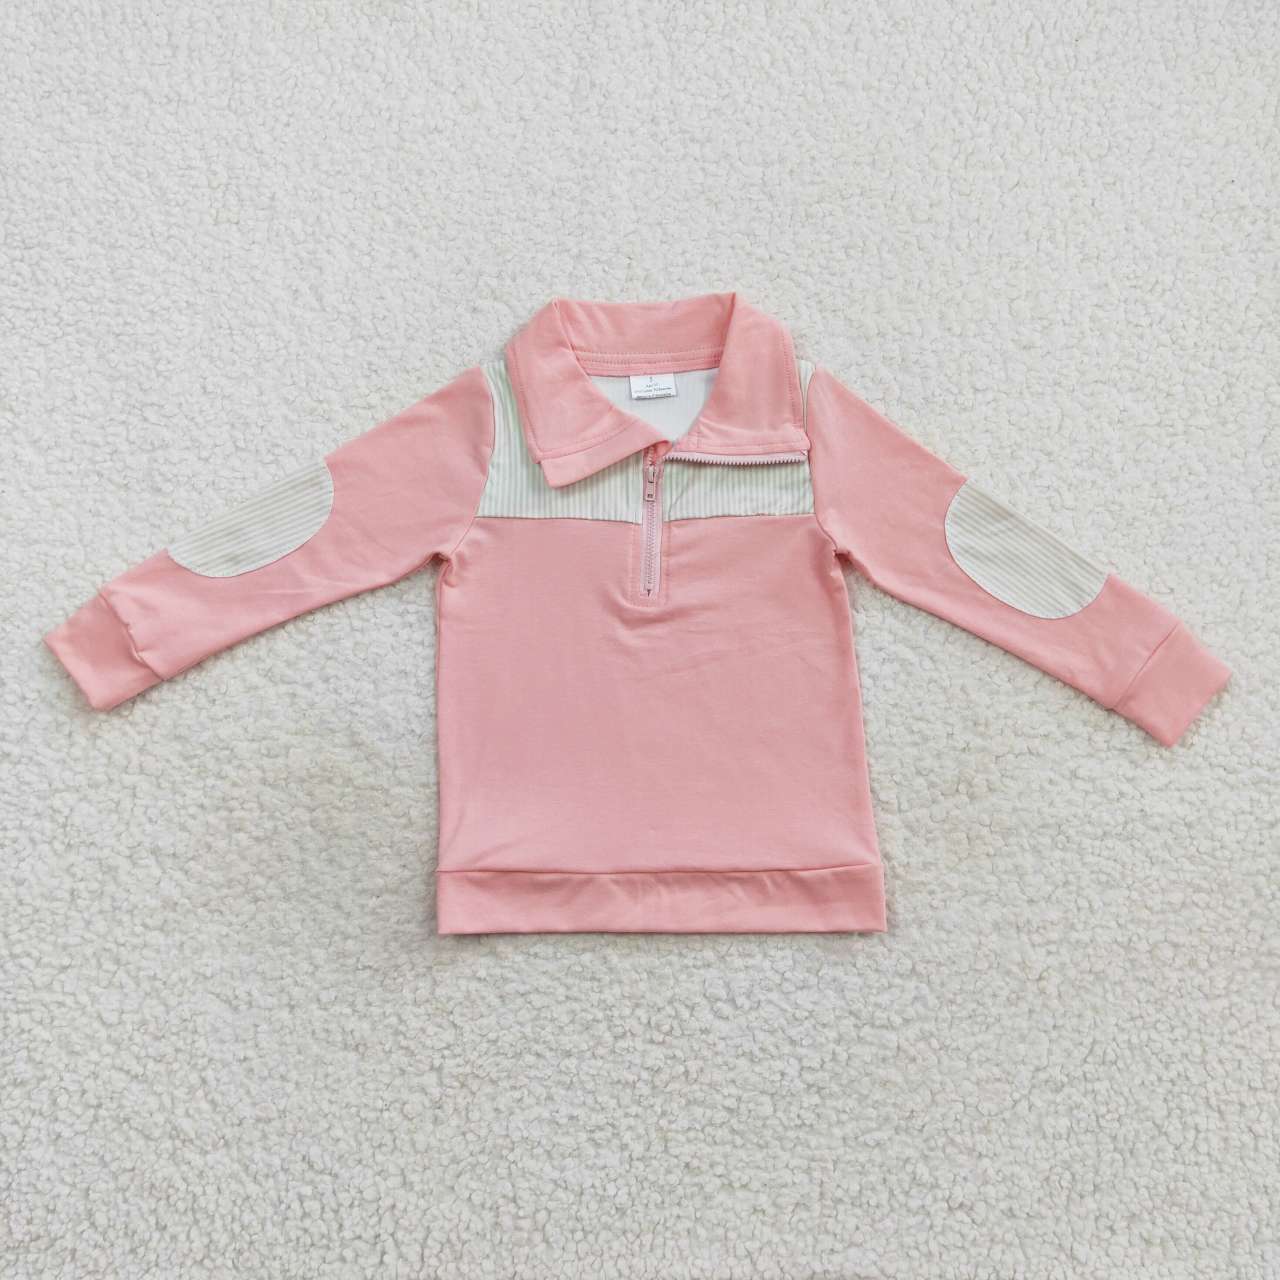 BT0288 toddler boy clothes pink boy winter top